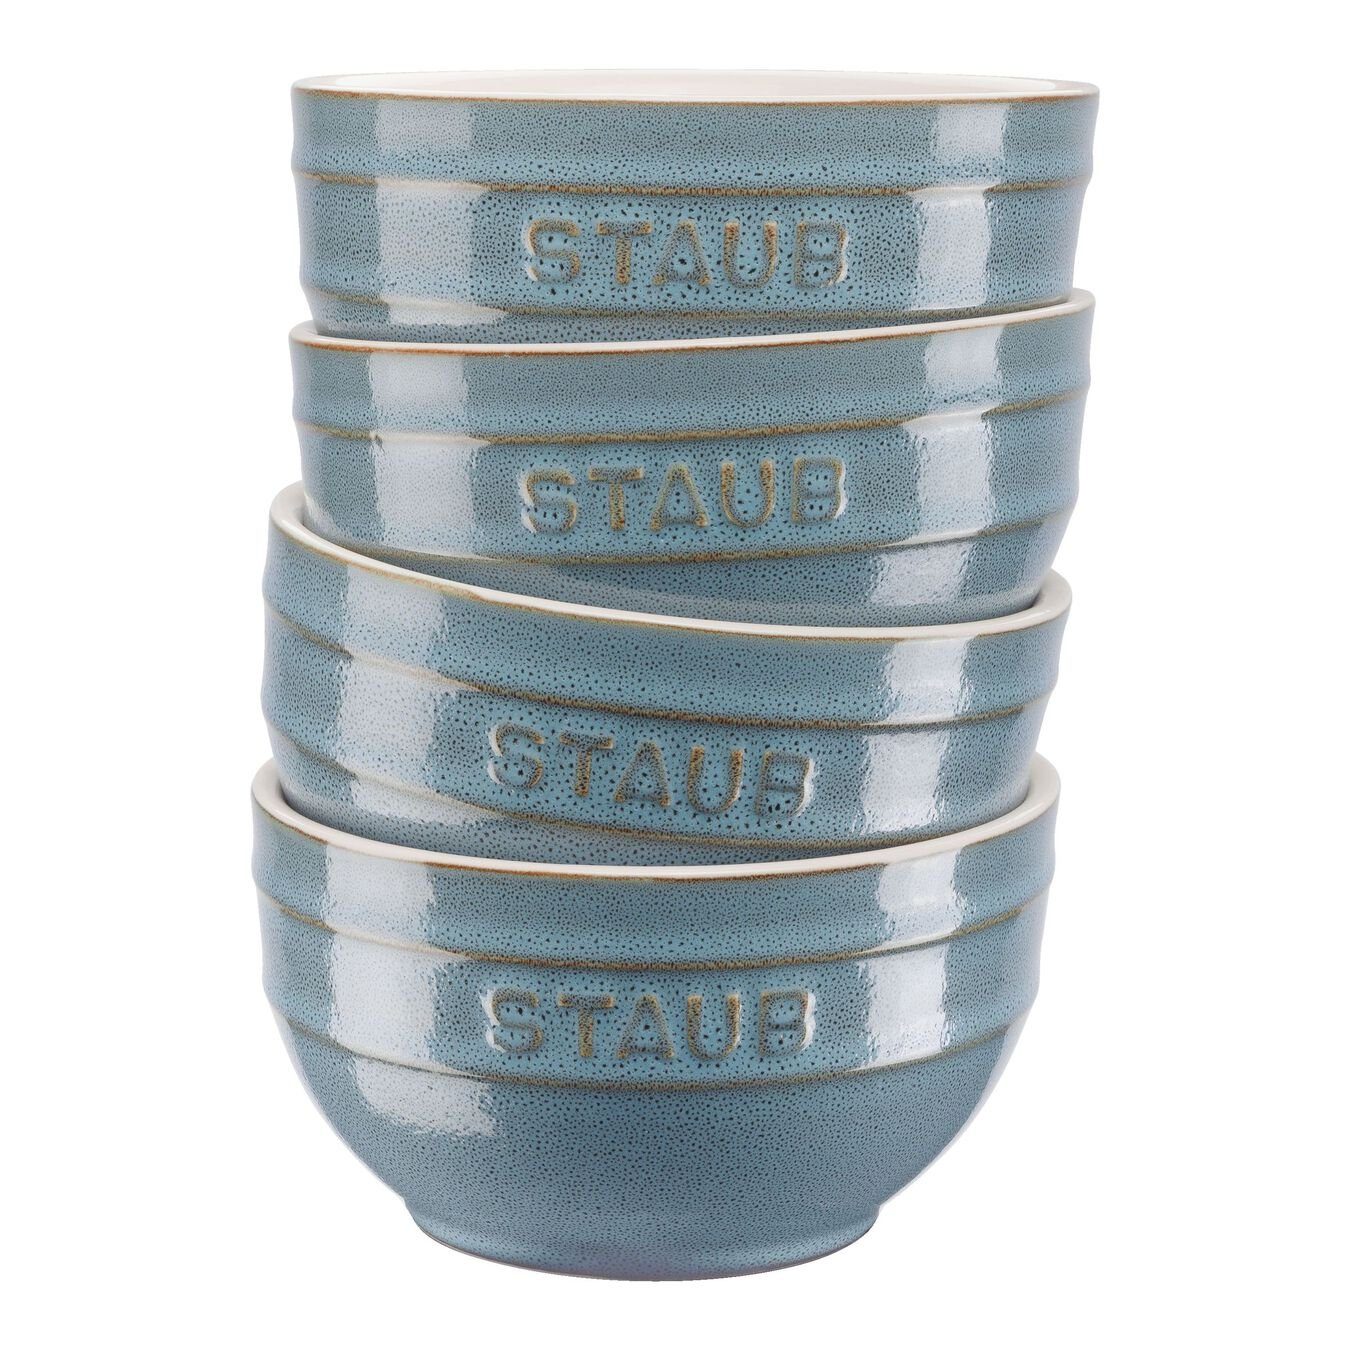 Staub Schüssel Staub Ceramique Schüsselset,Schüssel 4-tlg Antik-Türkis Keramik 14 cm 0,7 Liter Zubereiten und Servieren, Keramik, (4-tlg)